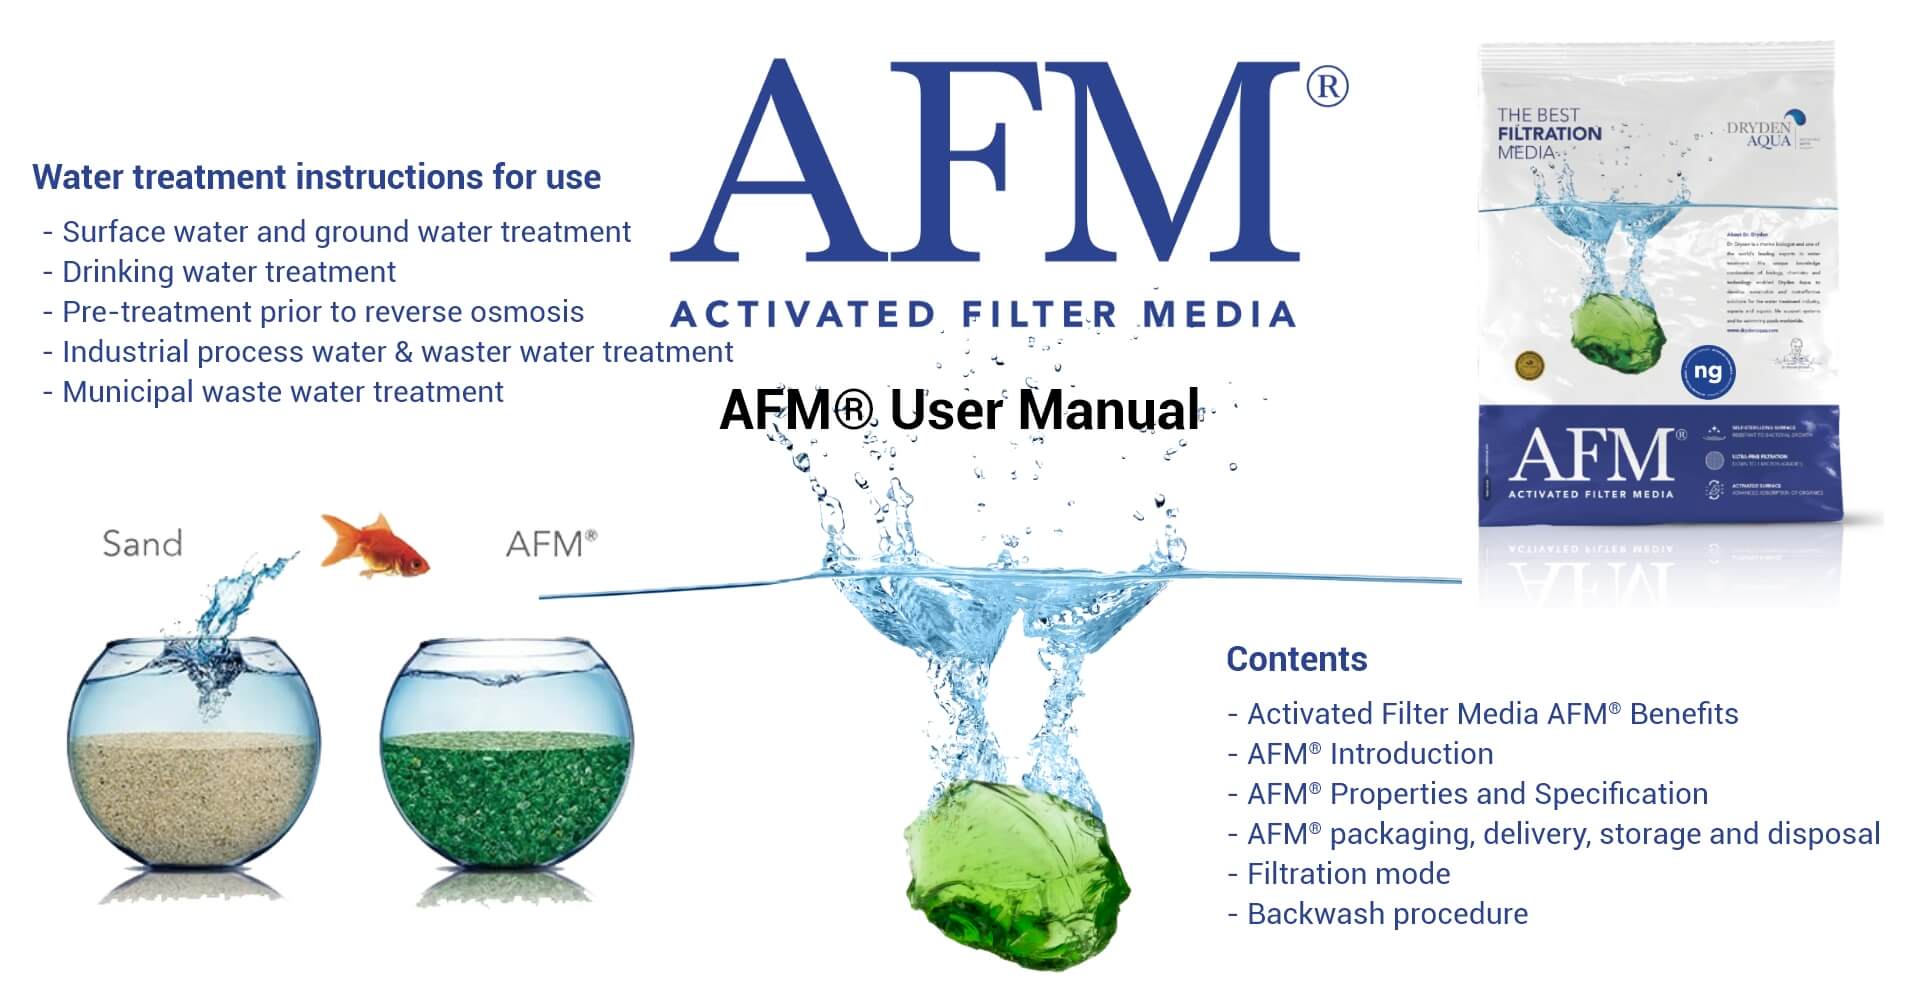 AFM® User Manual